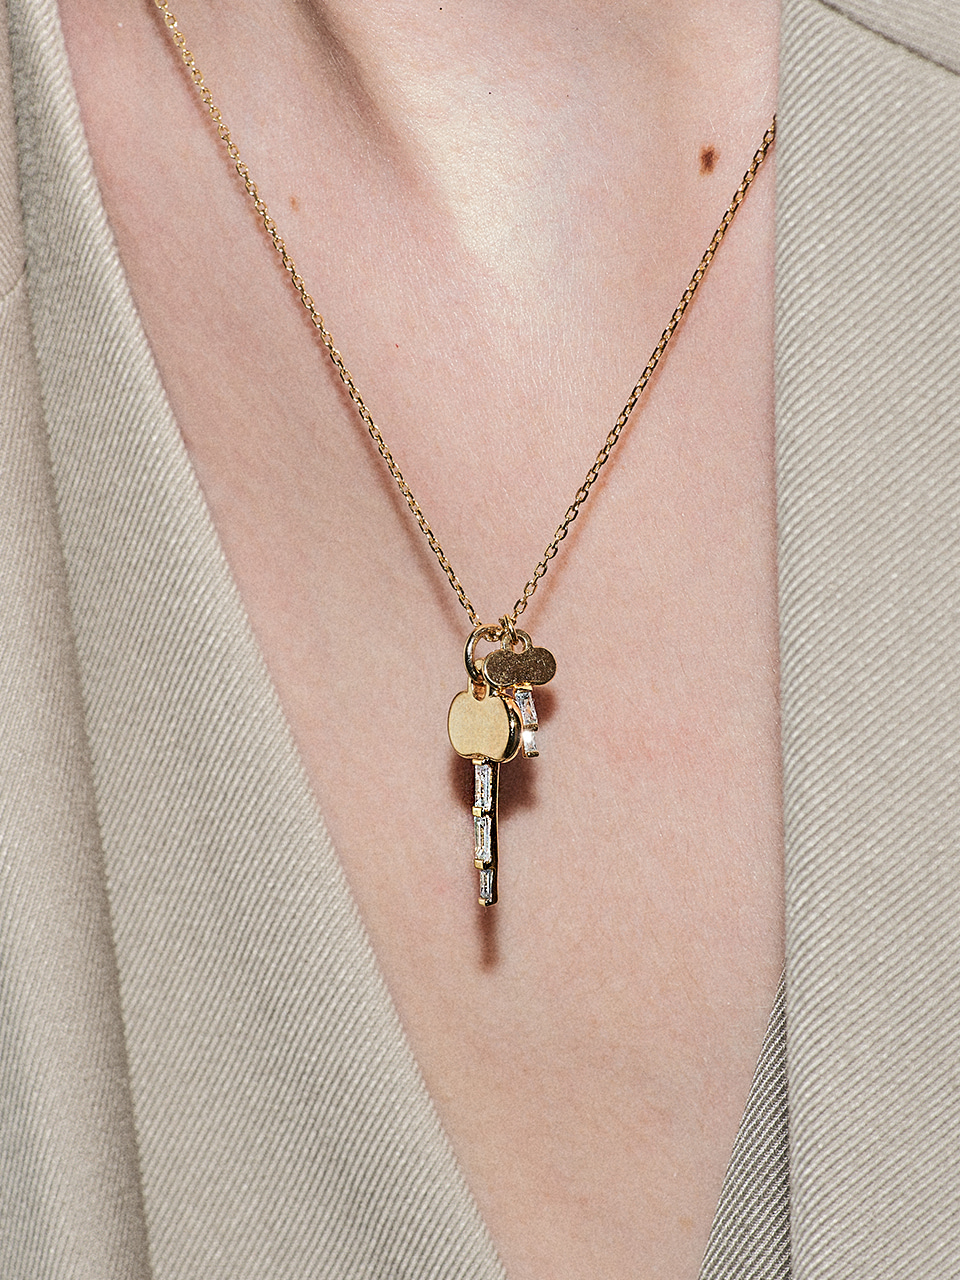 [silver925]glisten key necklace